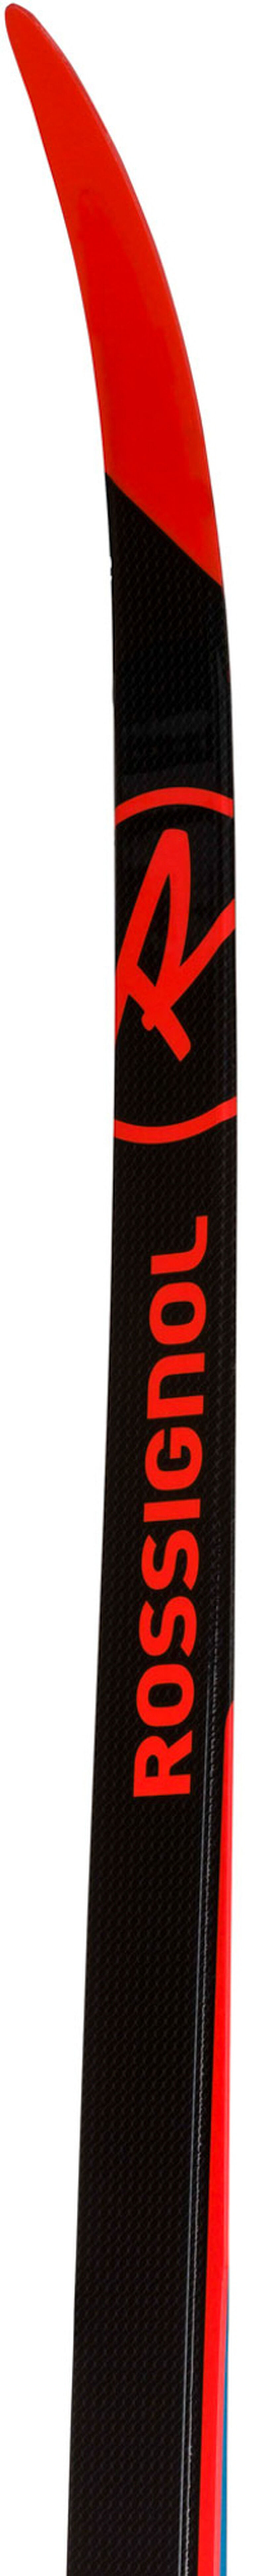 Unisex NORDIC RACING Skier X-IUM CLASSIC PREMIUM C2-STIFF